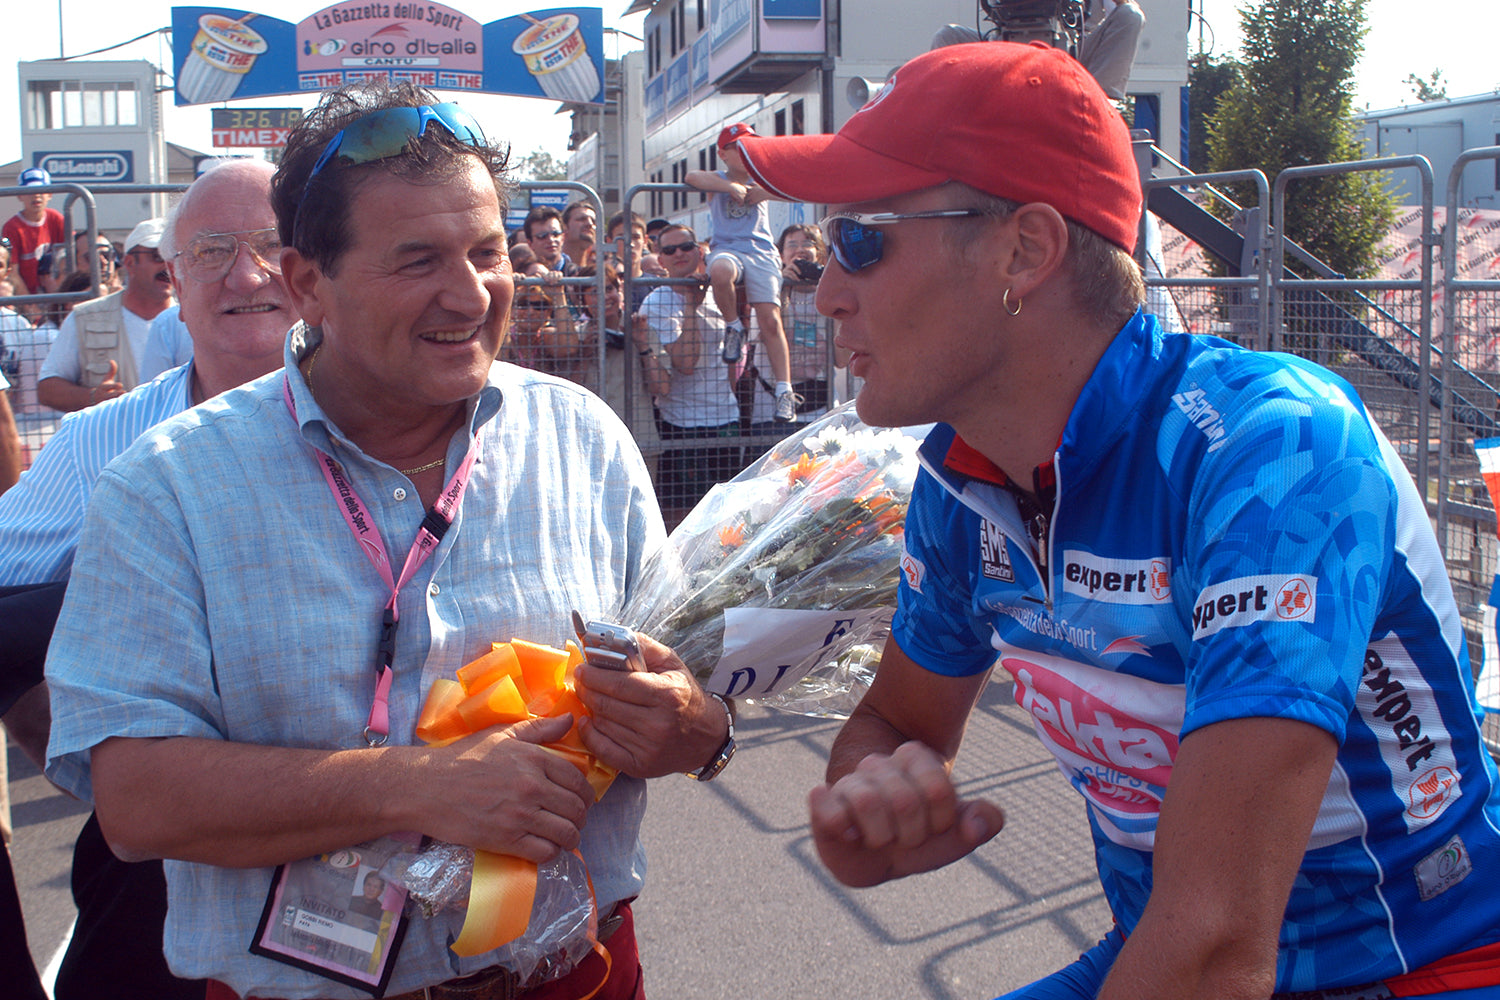 Magnus Bäckstedt (Team Fakta) who won the InterGiro jersey at the 2003 Giro D'Italia.  Photo: Fotoreporter Sirotti.